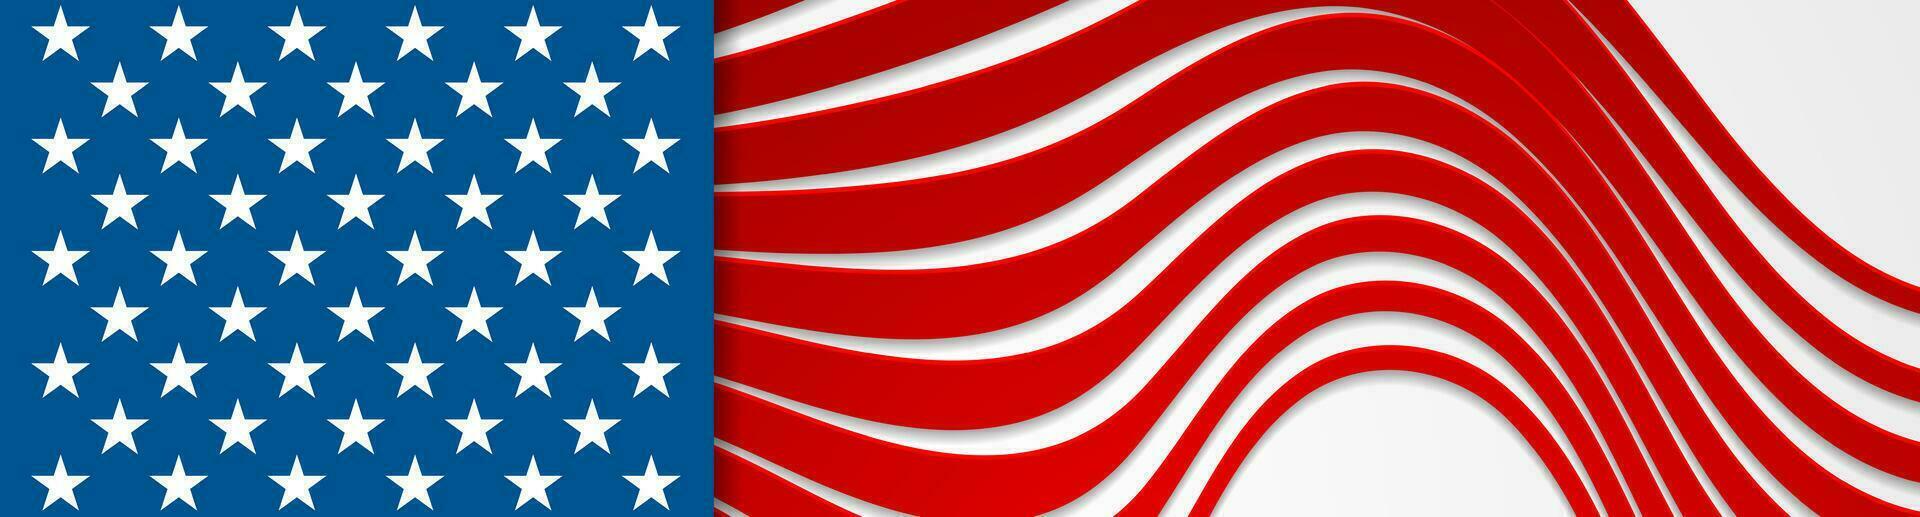 Verenigde Staten van Amerika kleuren en sterren abstract helder golvend banier ontwerp vector